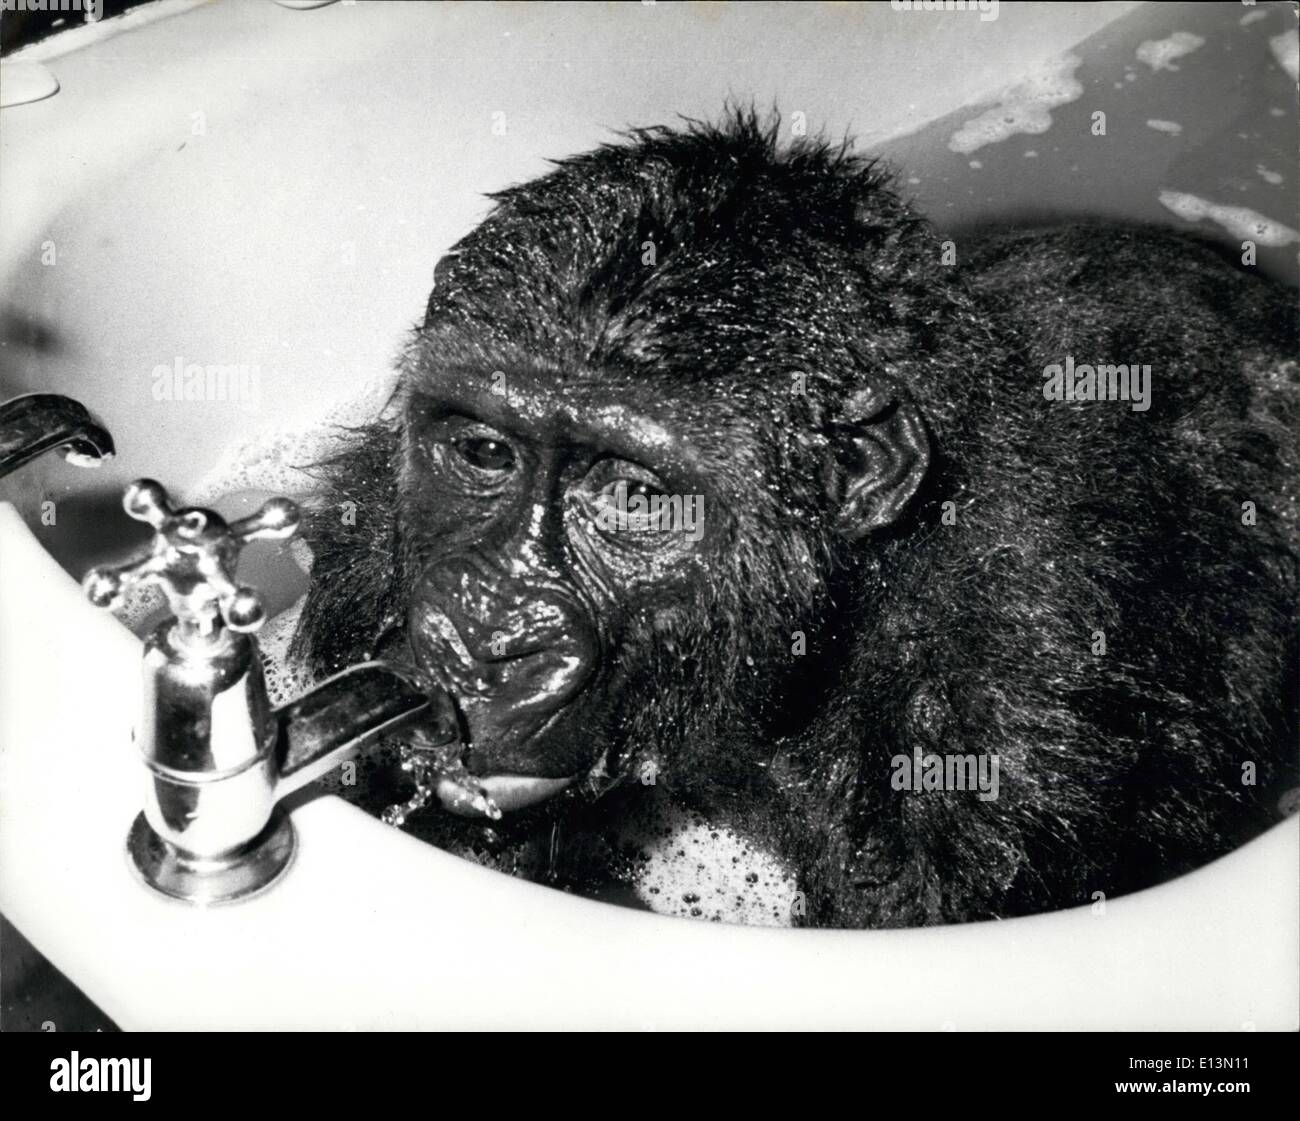 Mar 02, 2012 - Gorilla di ottenere un sorso di acqua mentre nella sua vasca da bagno. Foto Stock